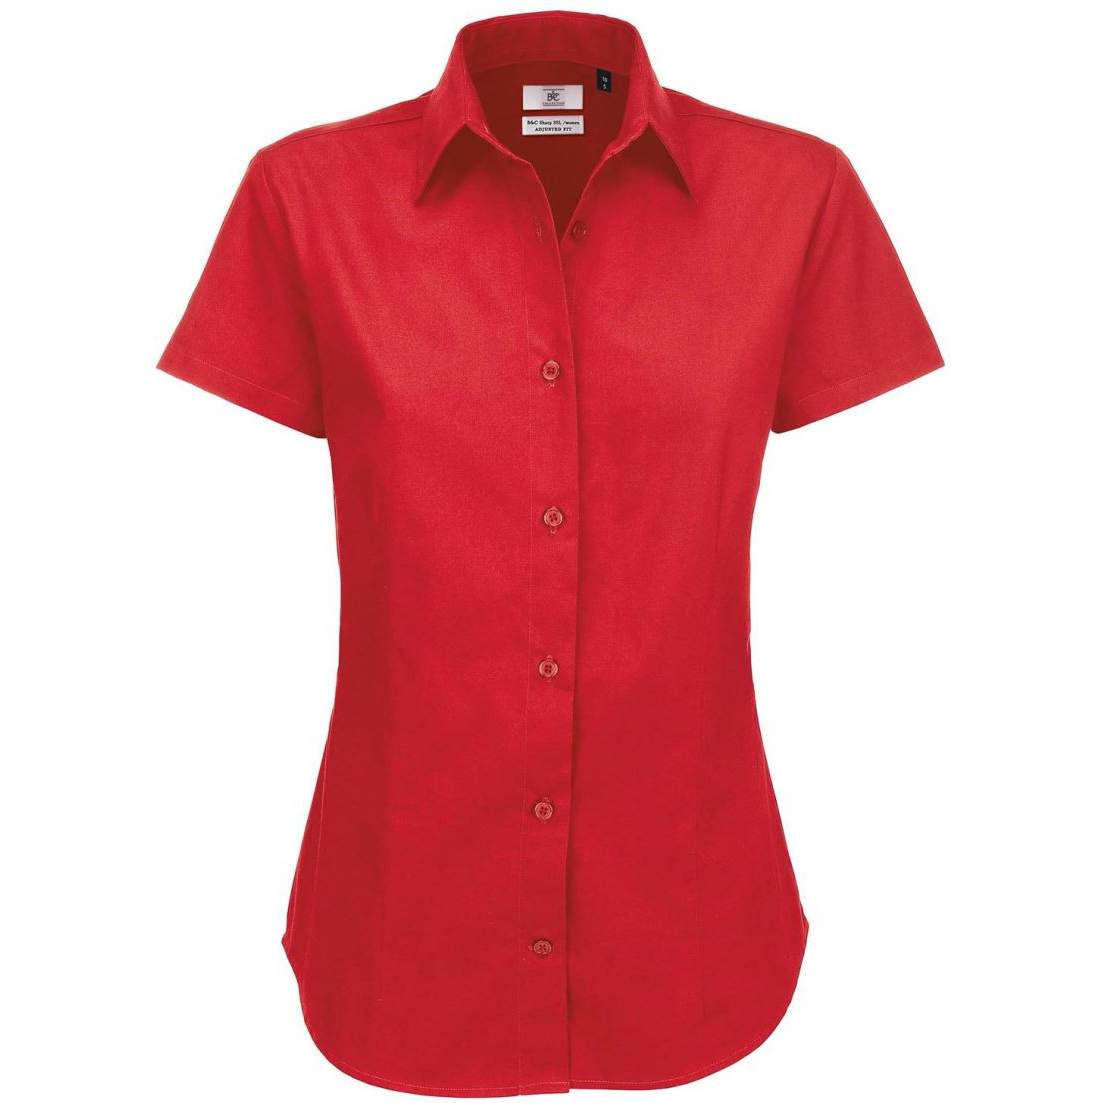 Dámská keprová košile B&C Sharp s krátkým rukávem - červená, XS